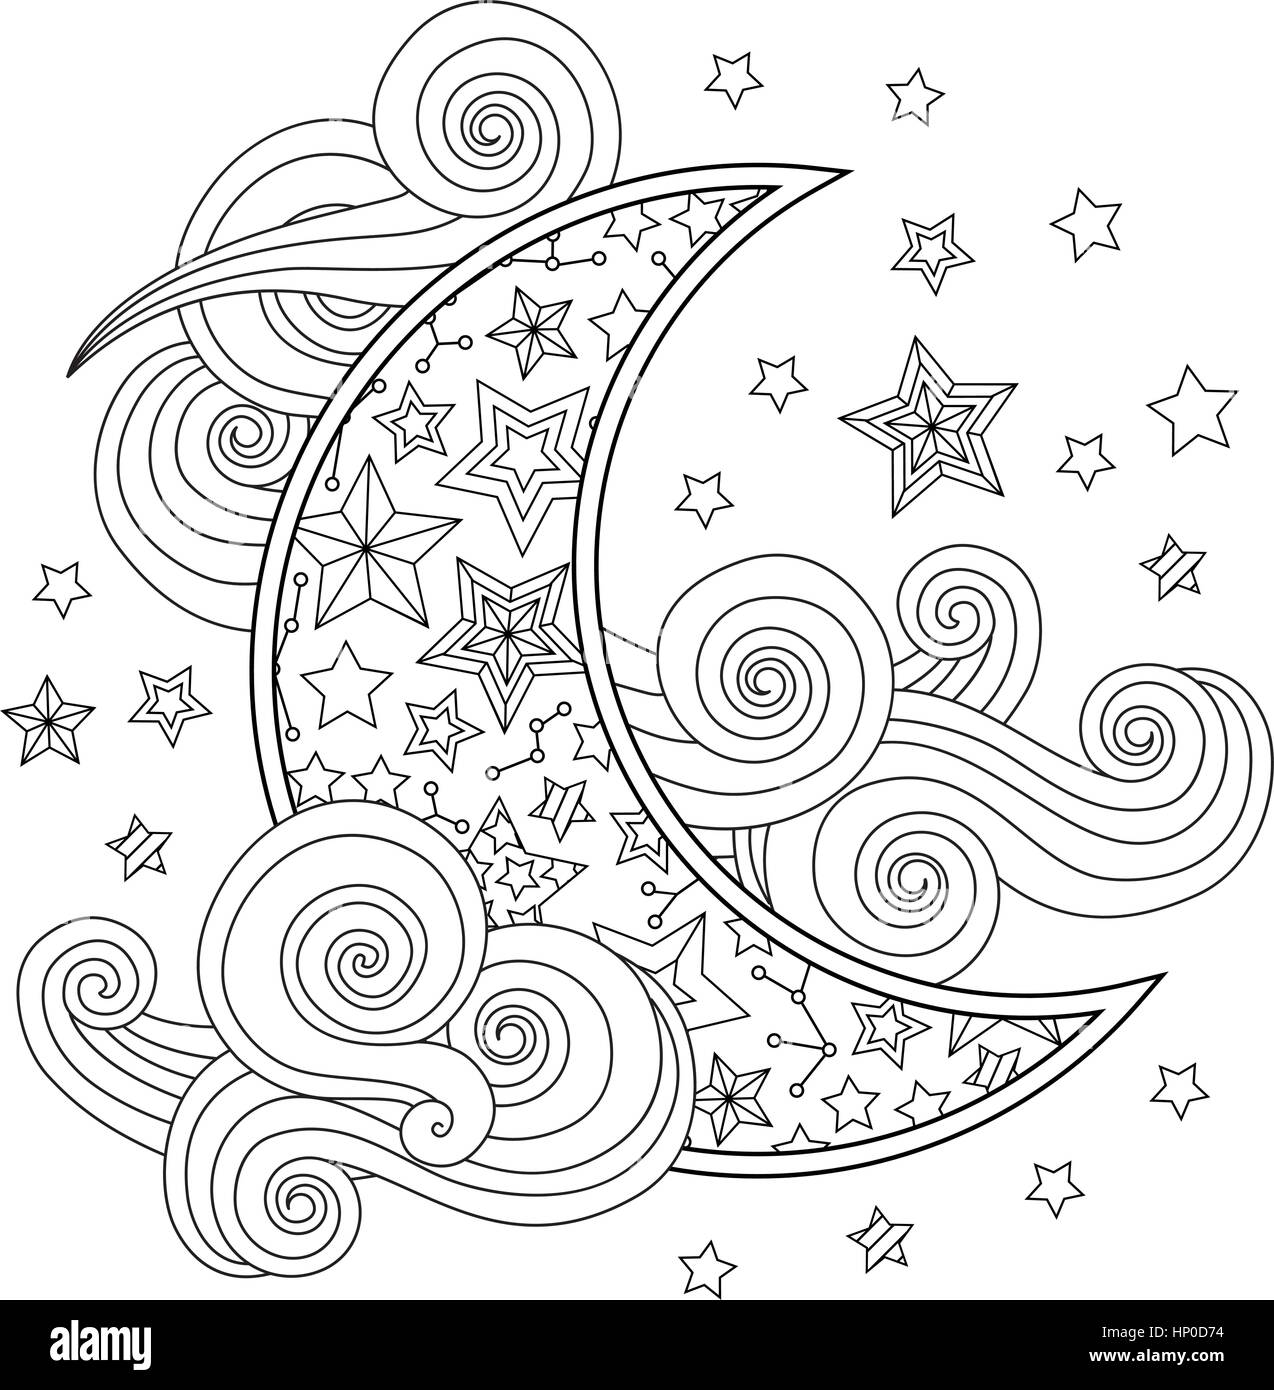 Kontur Bild der Mond Halbmond Wolken Sterne Zentangle inspiriert Doodle Stil isoliert auf weiss. Stock Vektor